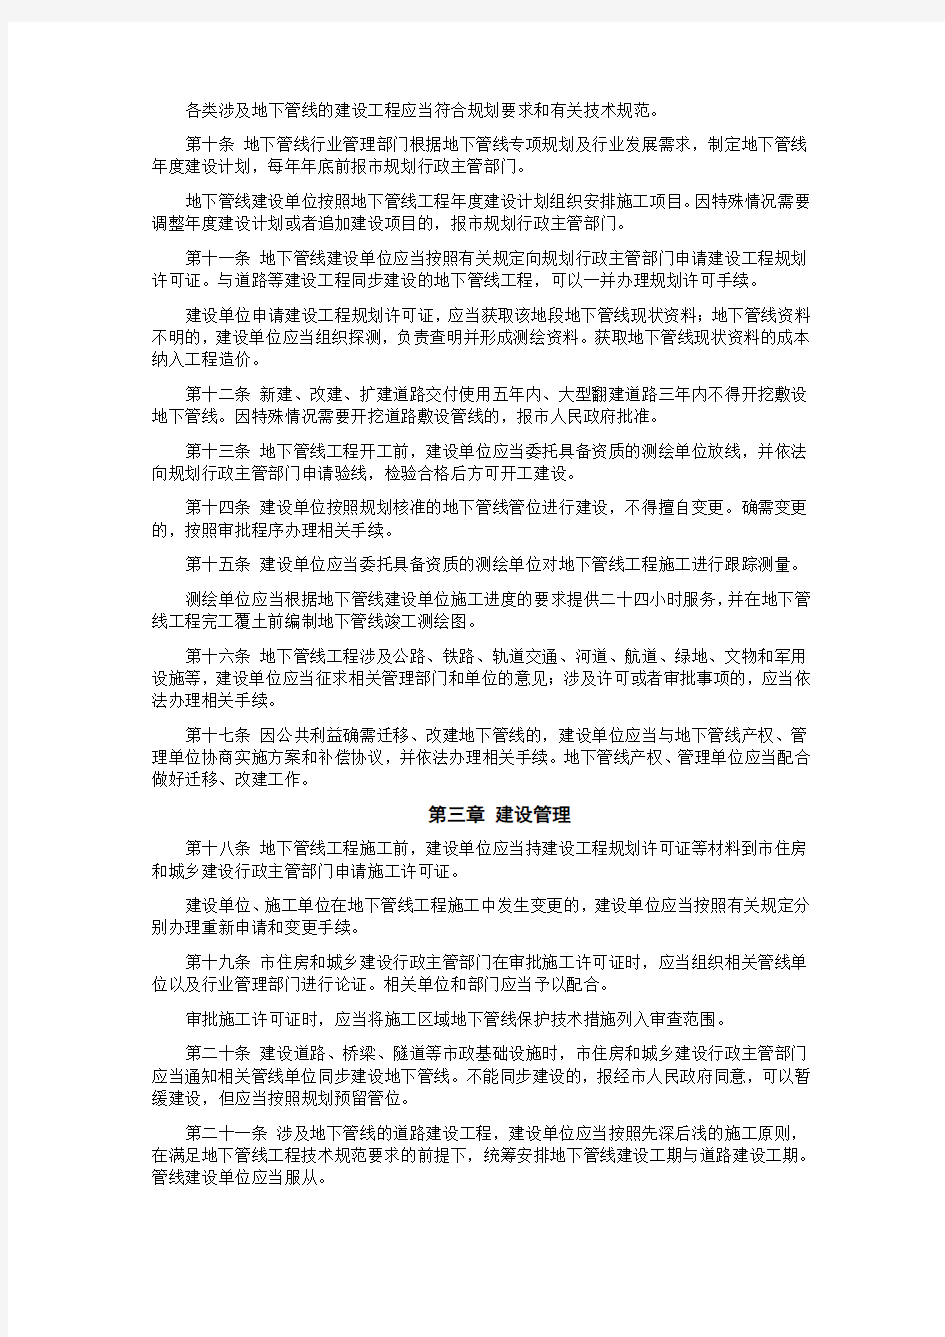 南京市城市地下管线管理办法